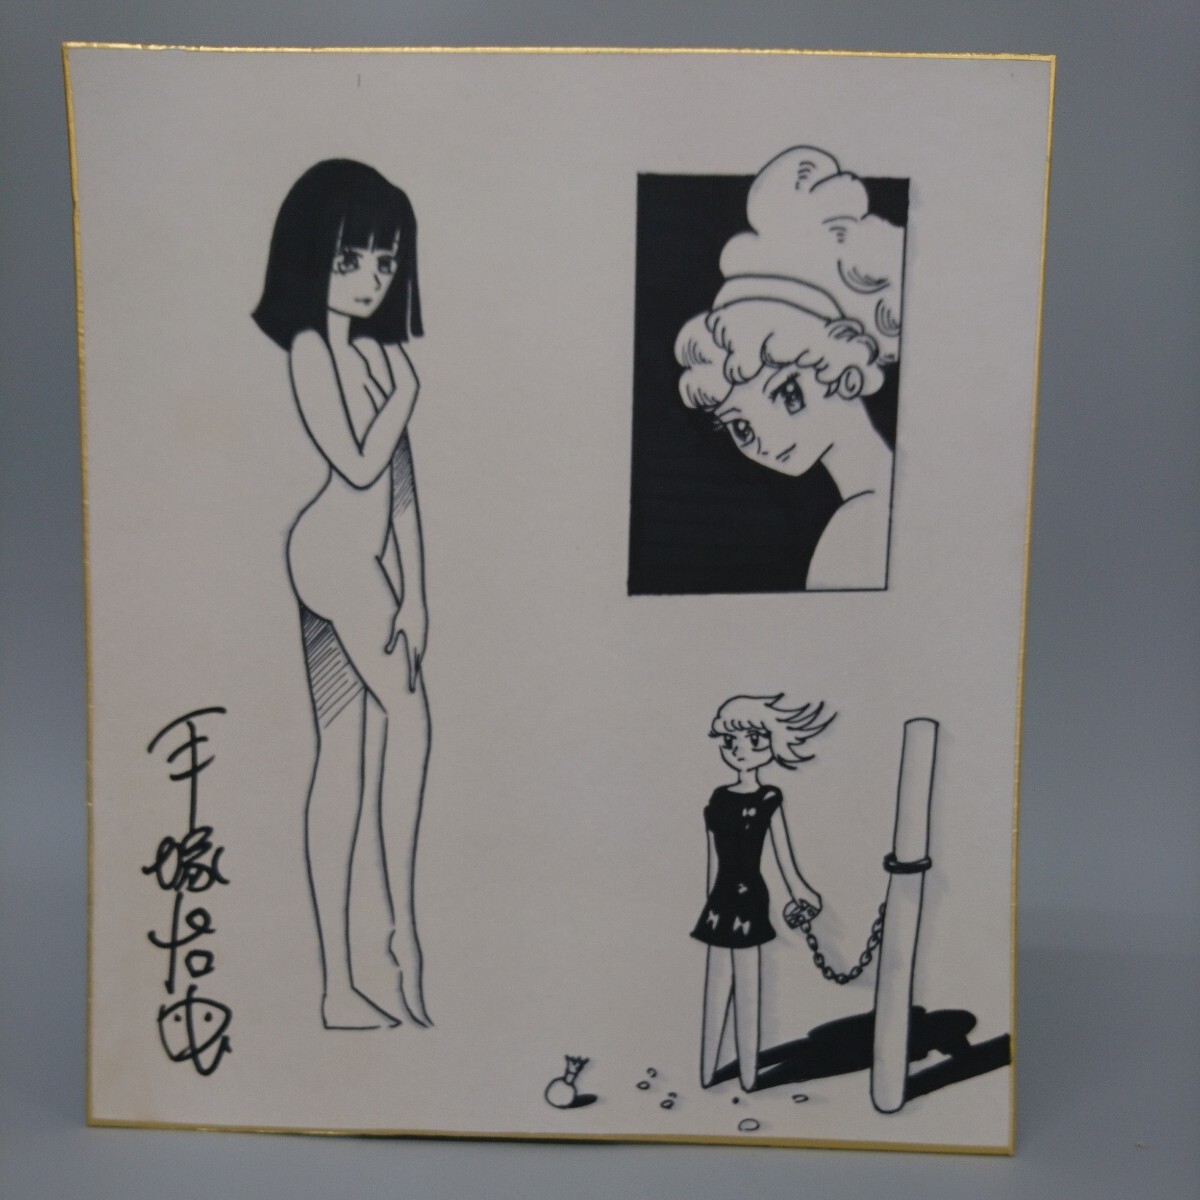 Kopieren Sie das farbige Signaturpapier von Osamu Tezuka und verwischen Sie es, Es gibt Schmutz, Comics, Anime-Waren, Zeichen, Handgezeichnetes Gemälde